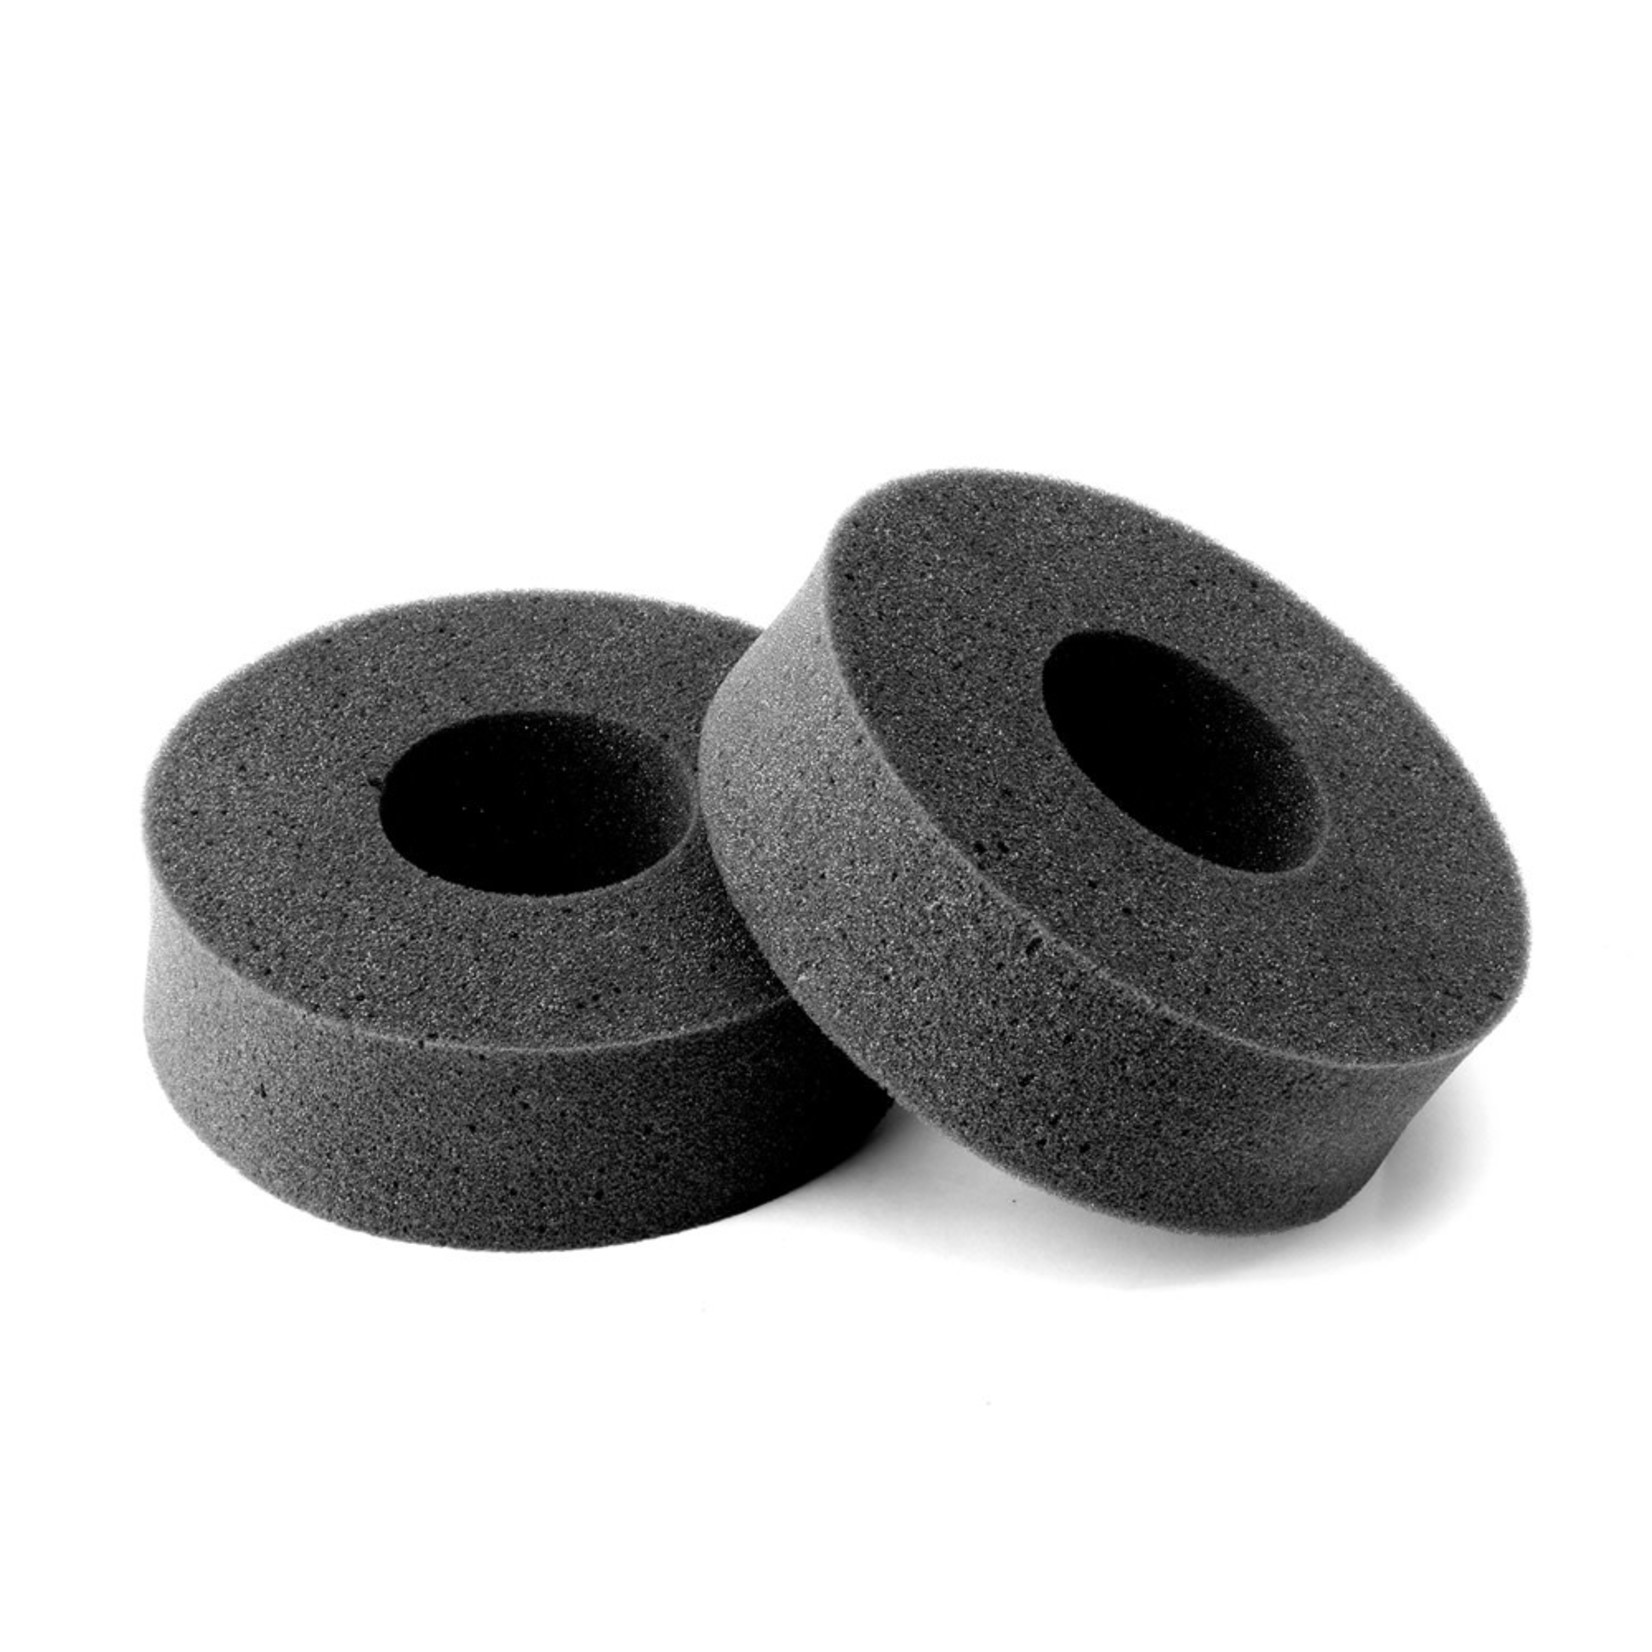 Jetko Tires Jetko 1.9" Crawler Single Stage Foam Inserts (Medium) Black (2) #JKO6212BK